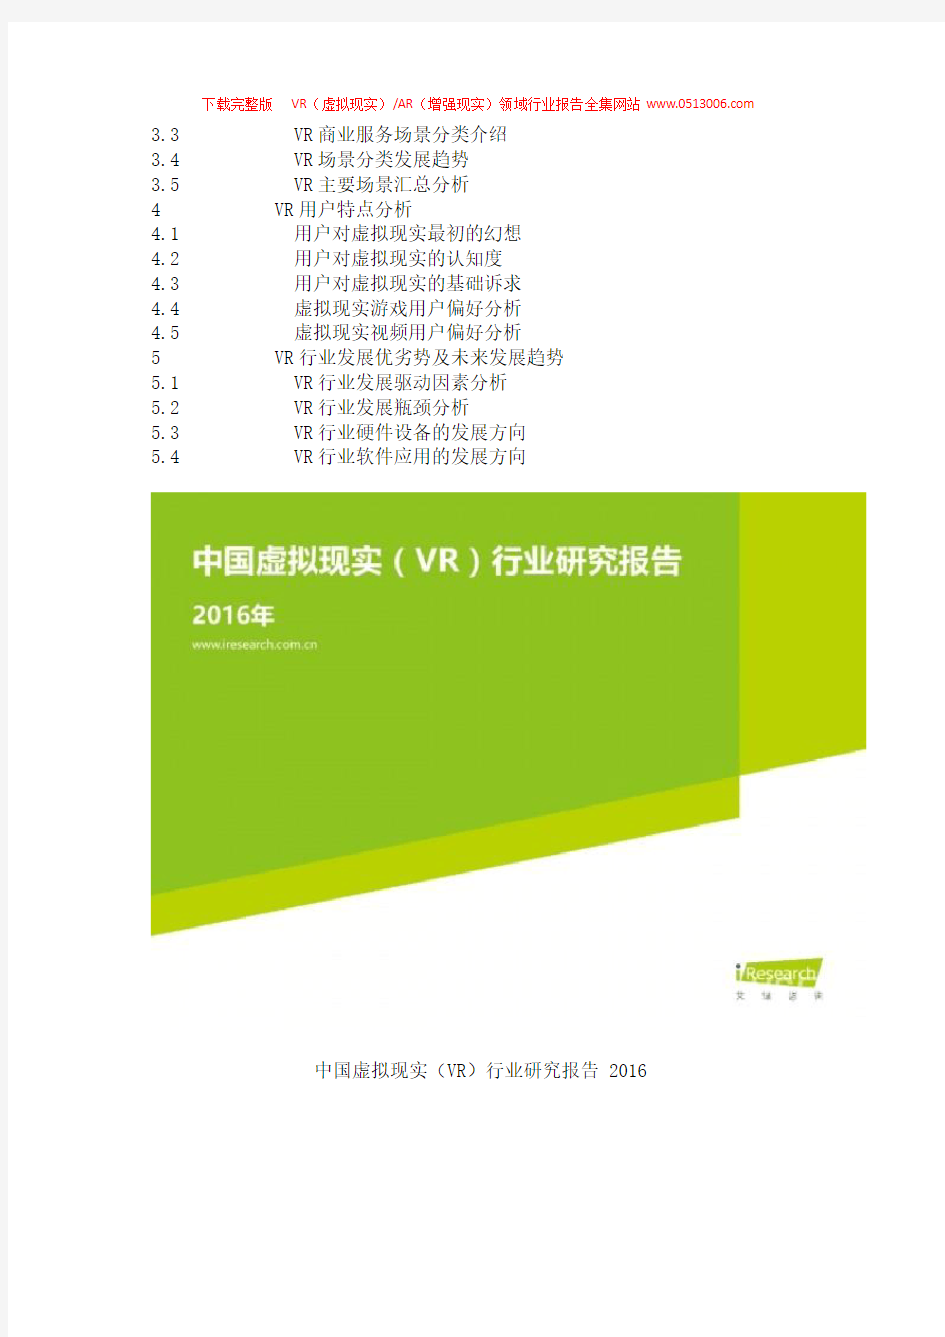 《2016年中国虚拟现实(VR)行业研究报告》完整版